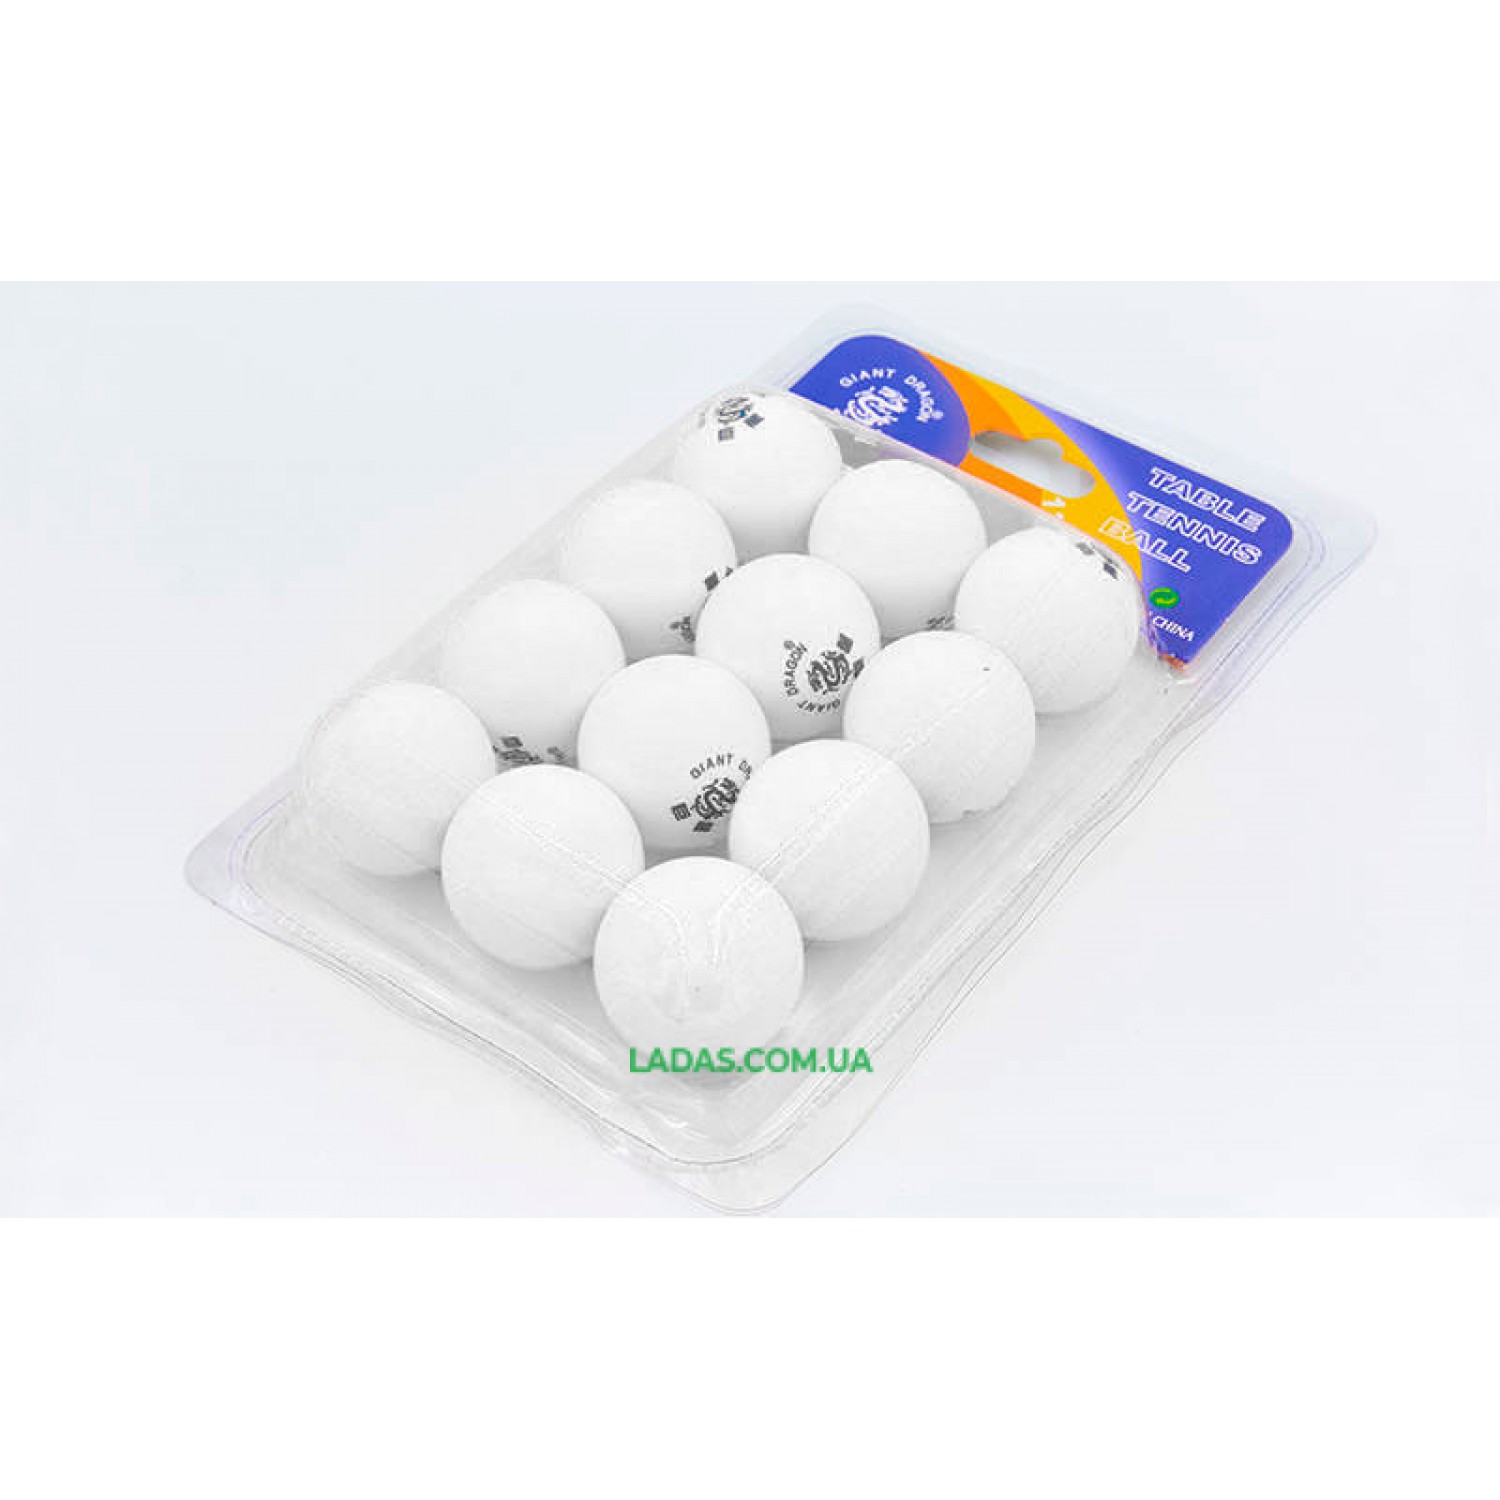 Набор мячей для настольного тенниса 12 штук GIANT DRAGON MT-6558 (целлулоид, d-40мм, цвета в ассортименте)